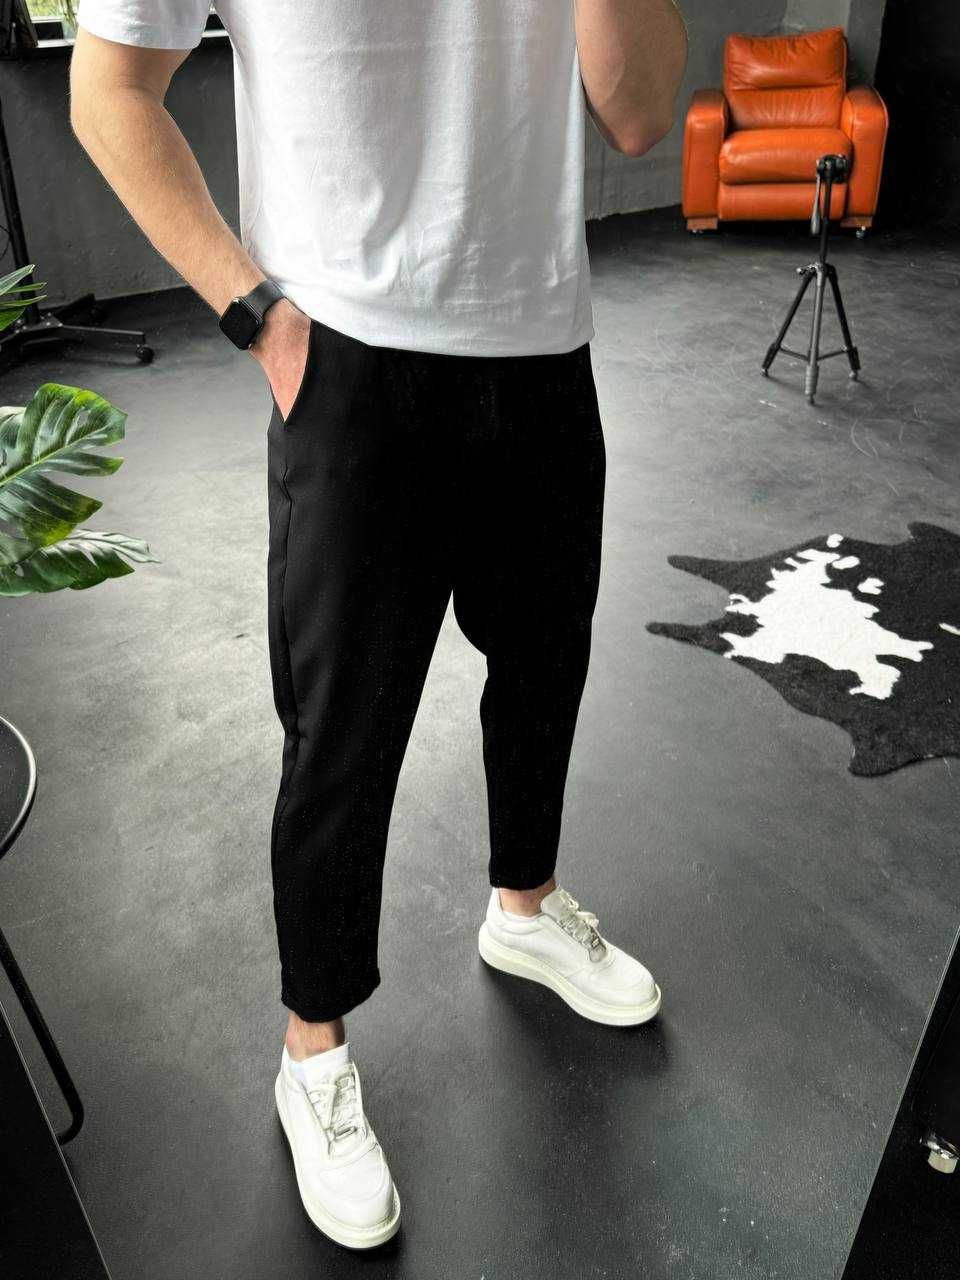 NEW
Легкі брюки в 2 кольорах